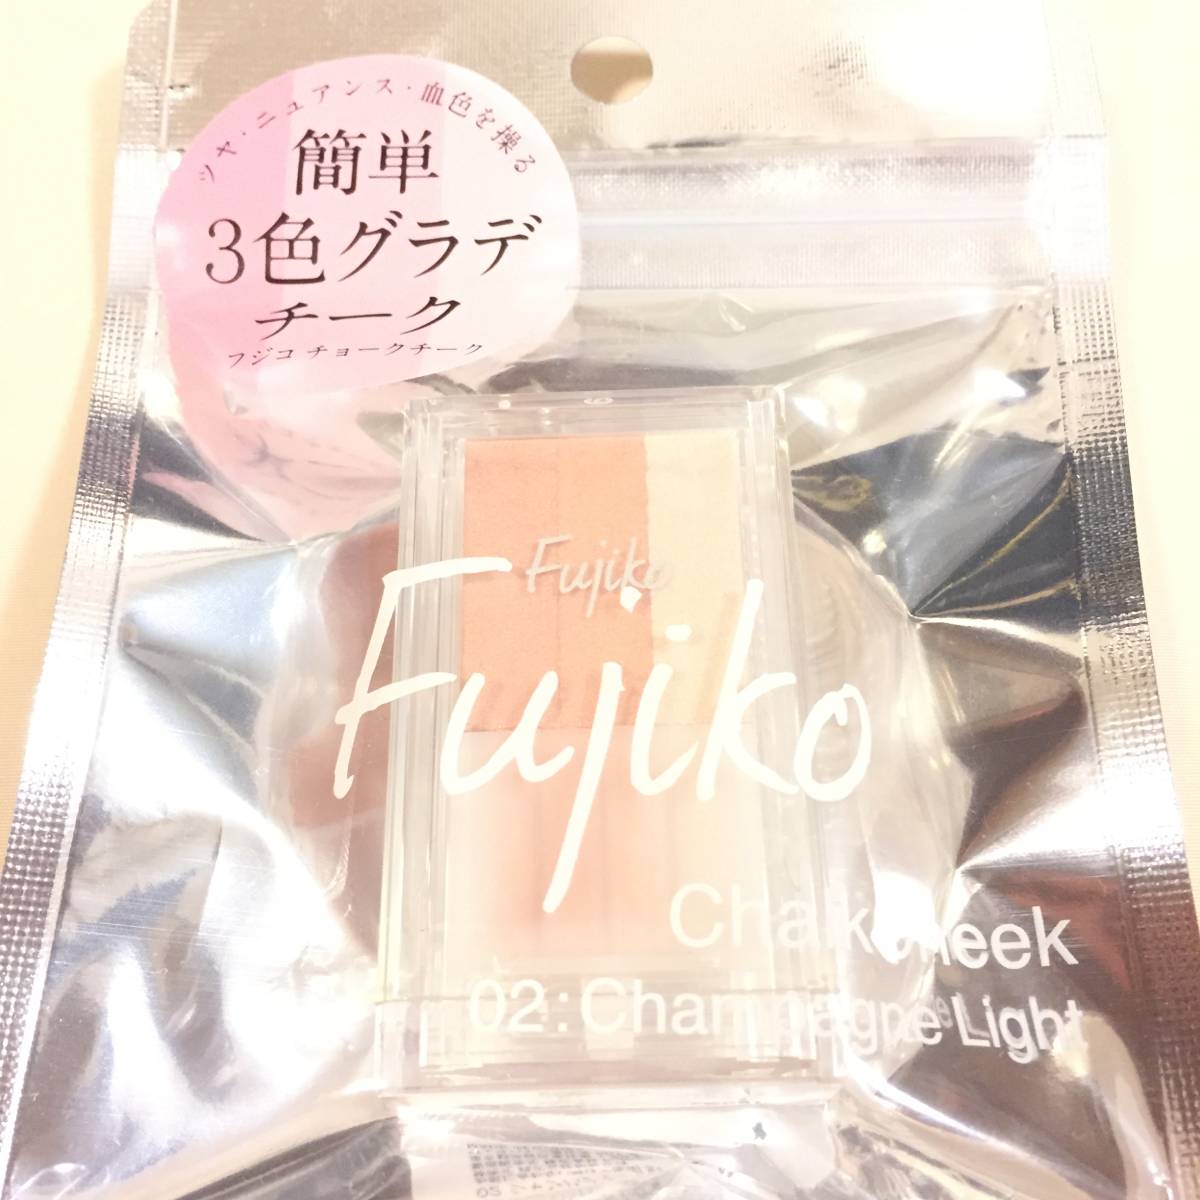 新品 ◆Fujiko (フジコ) チョークチーク 02 シャンパンライト (頬紅)◆ チークカラー_画像2